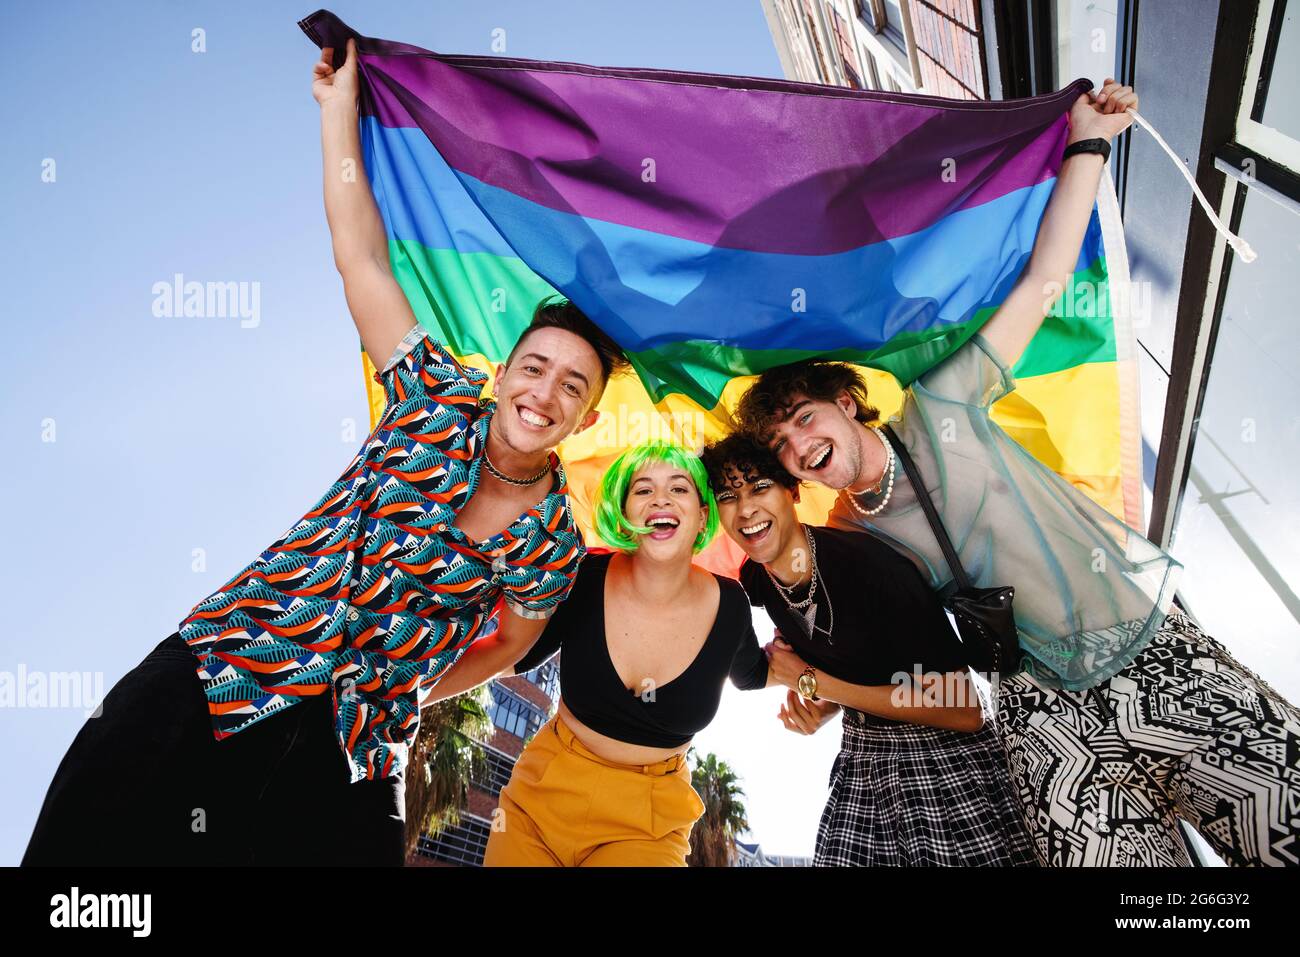 Quatre jeunes célèbrent leur identité queer lors d'un défilé de fierté gay. Groupe de jeunes LGBTQ+ souriant gaiement tout en élevant l'arc-en-ciel Banque D'Images